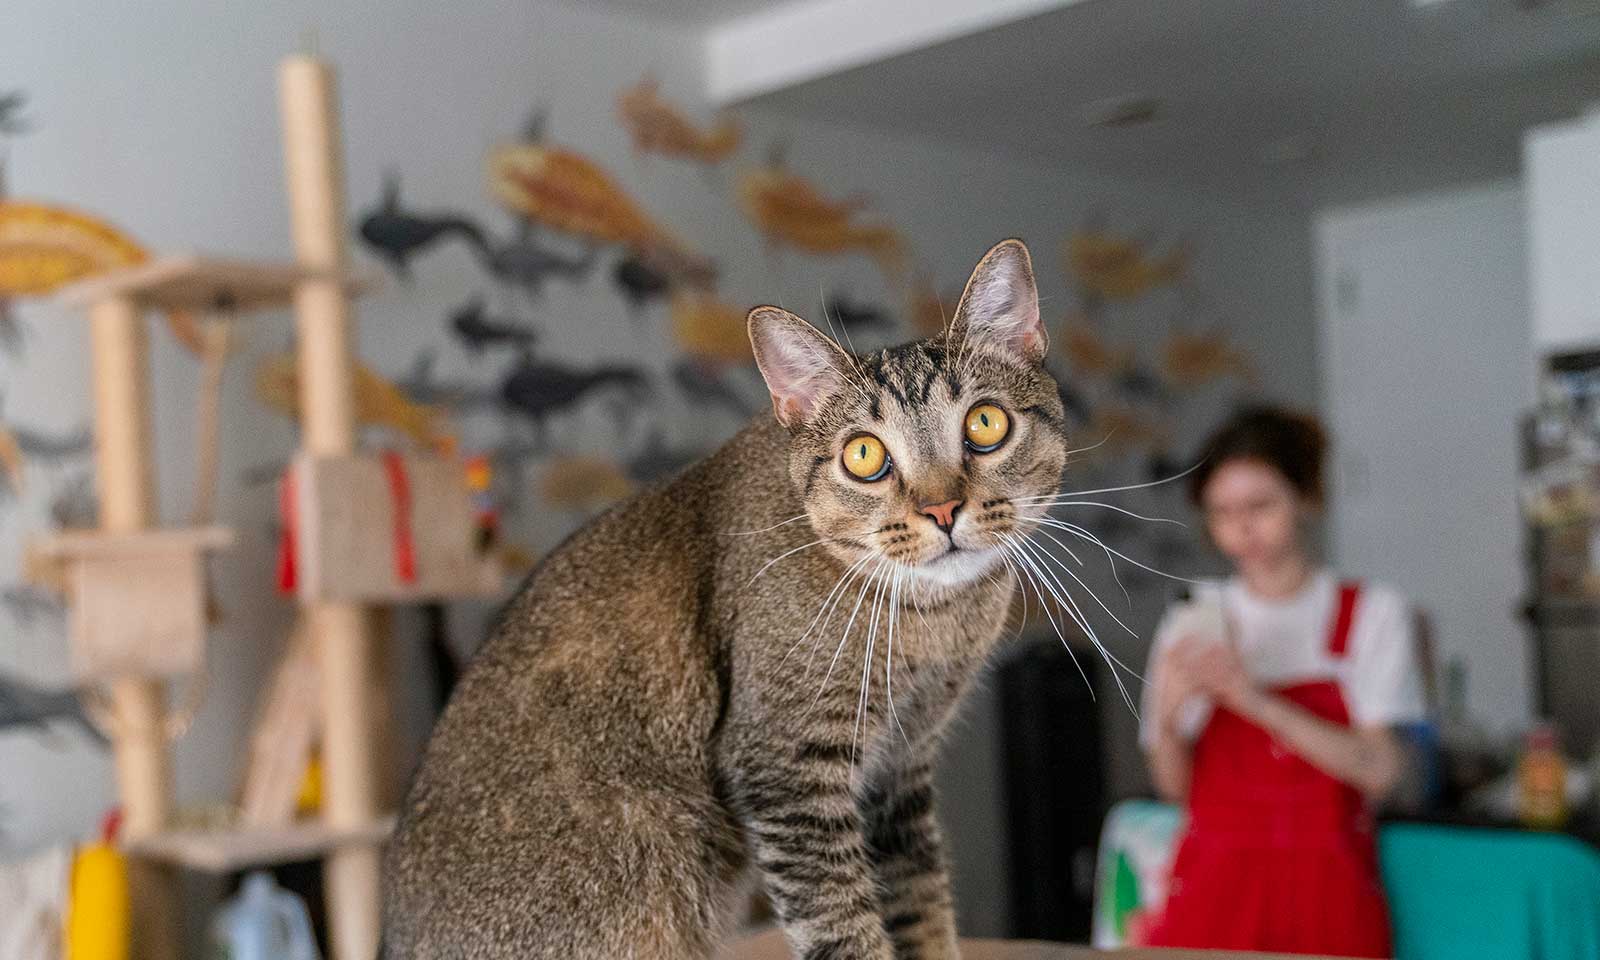 A cat in an art studio